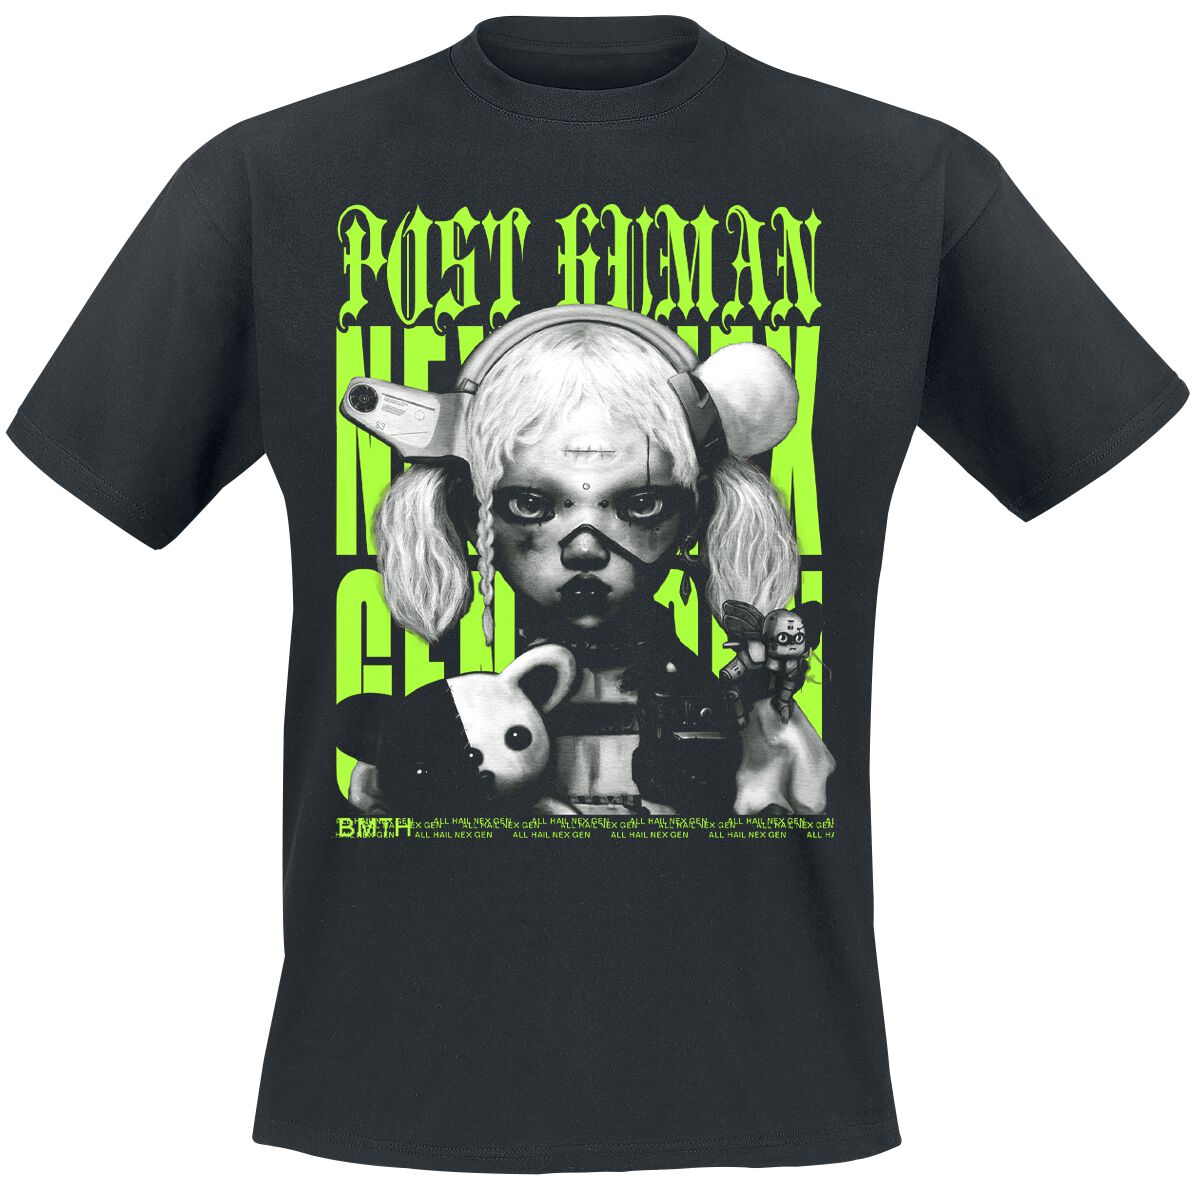 Bring Me The Horizon T-Shirt - Green Next Gen - S bis M - für Männer - Größe S - schwarz  - Lizenziertes Merchandise!